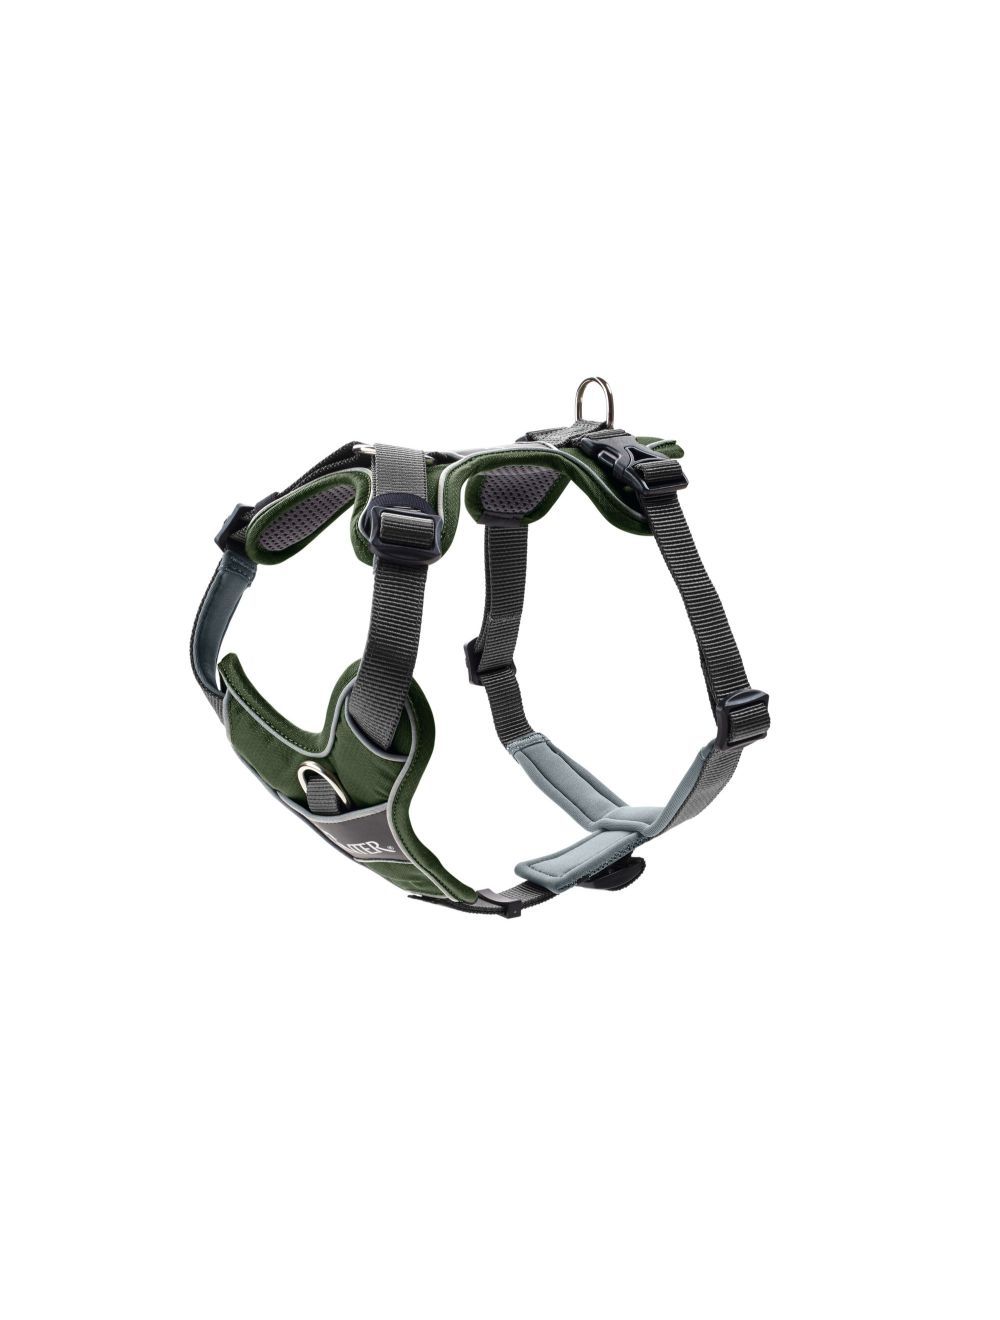 Hunter - Harness Divo S-M, green/grey - (67591) - Kjæledyr og utstyr